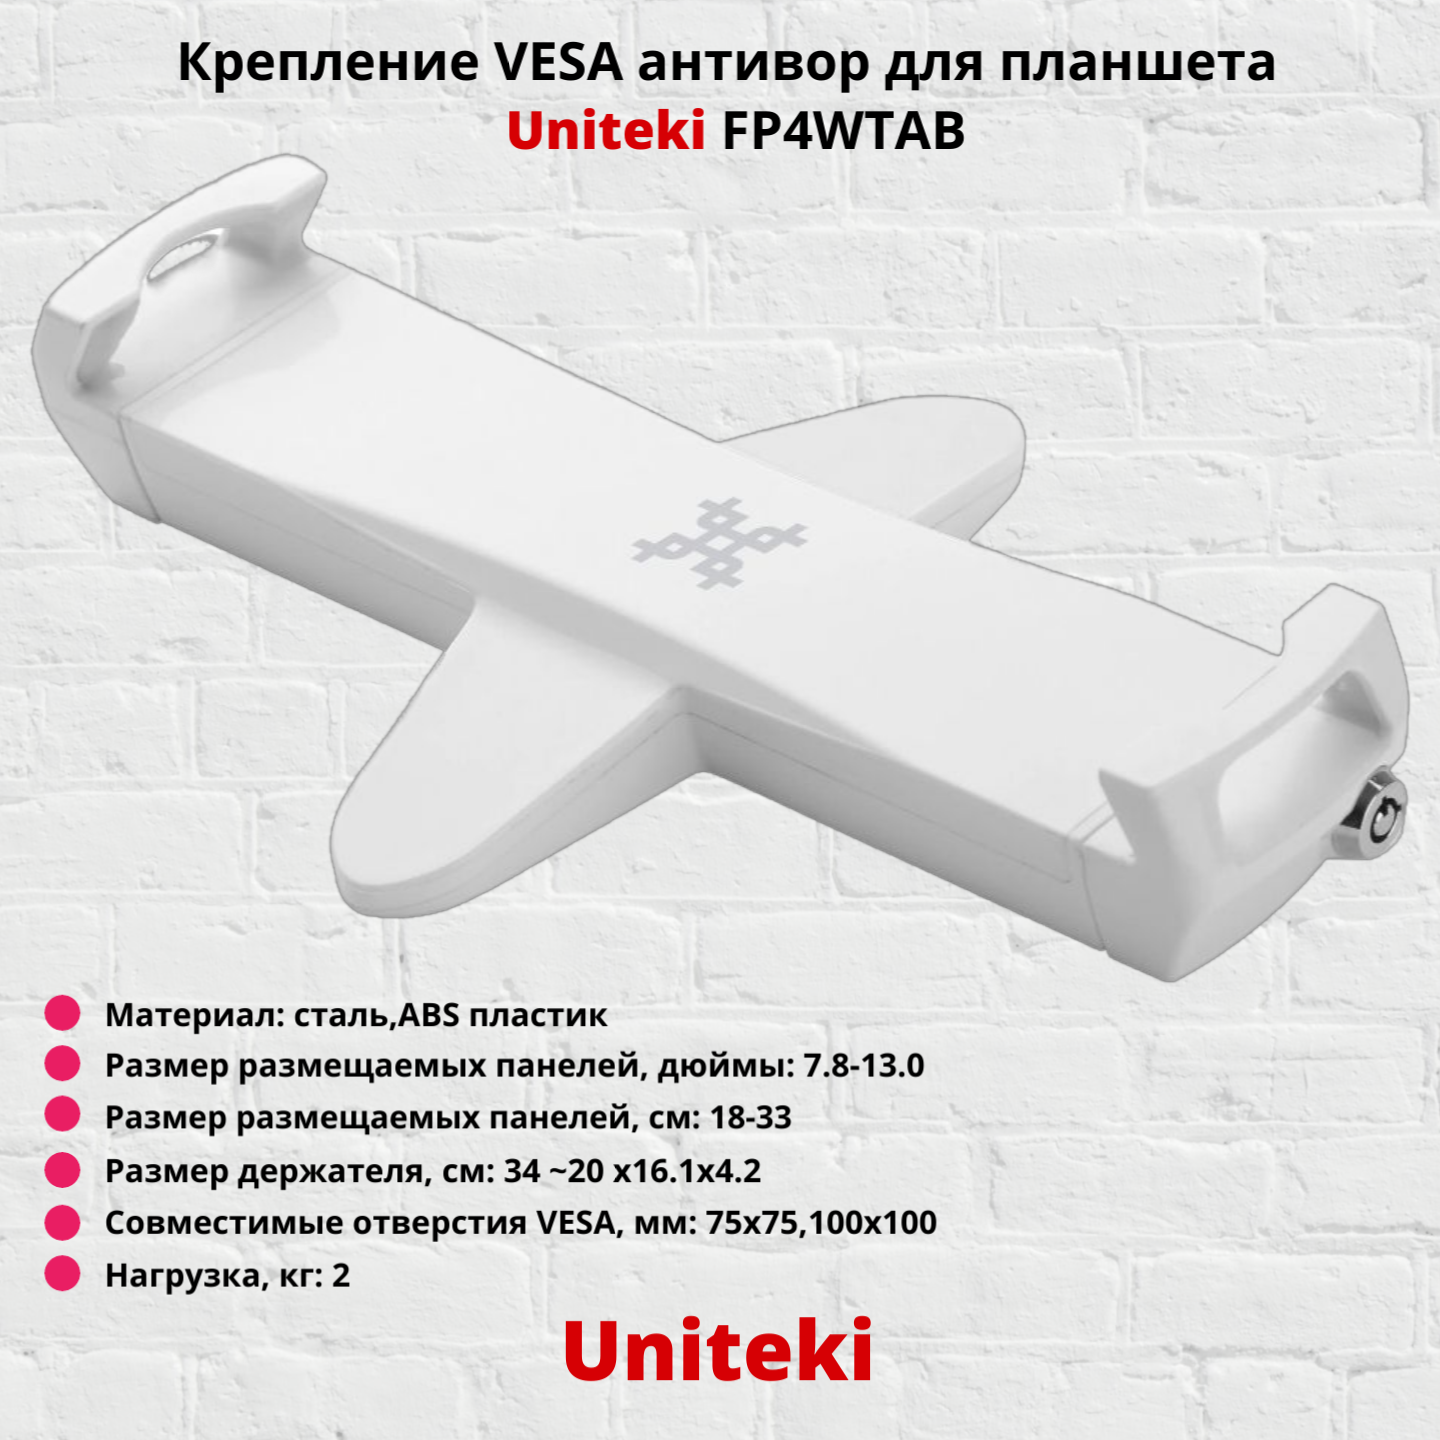 Крепление VESA антивор для планшета,электронной книги Uniteki FP4WTAB,белый